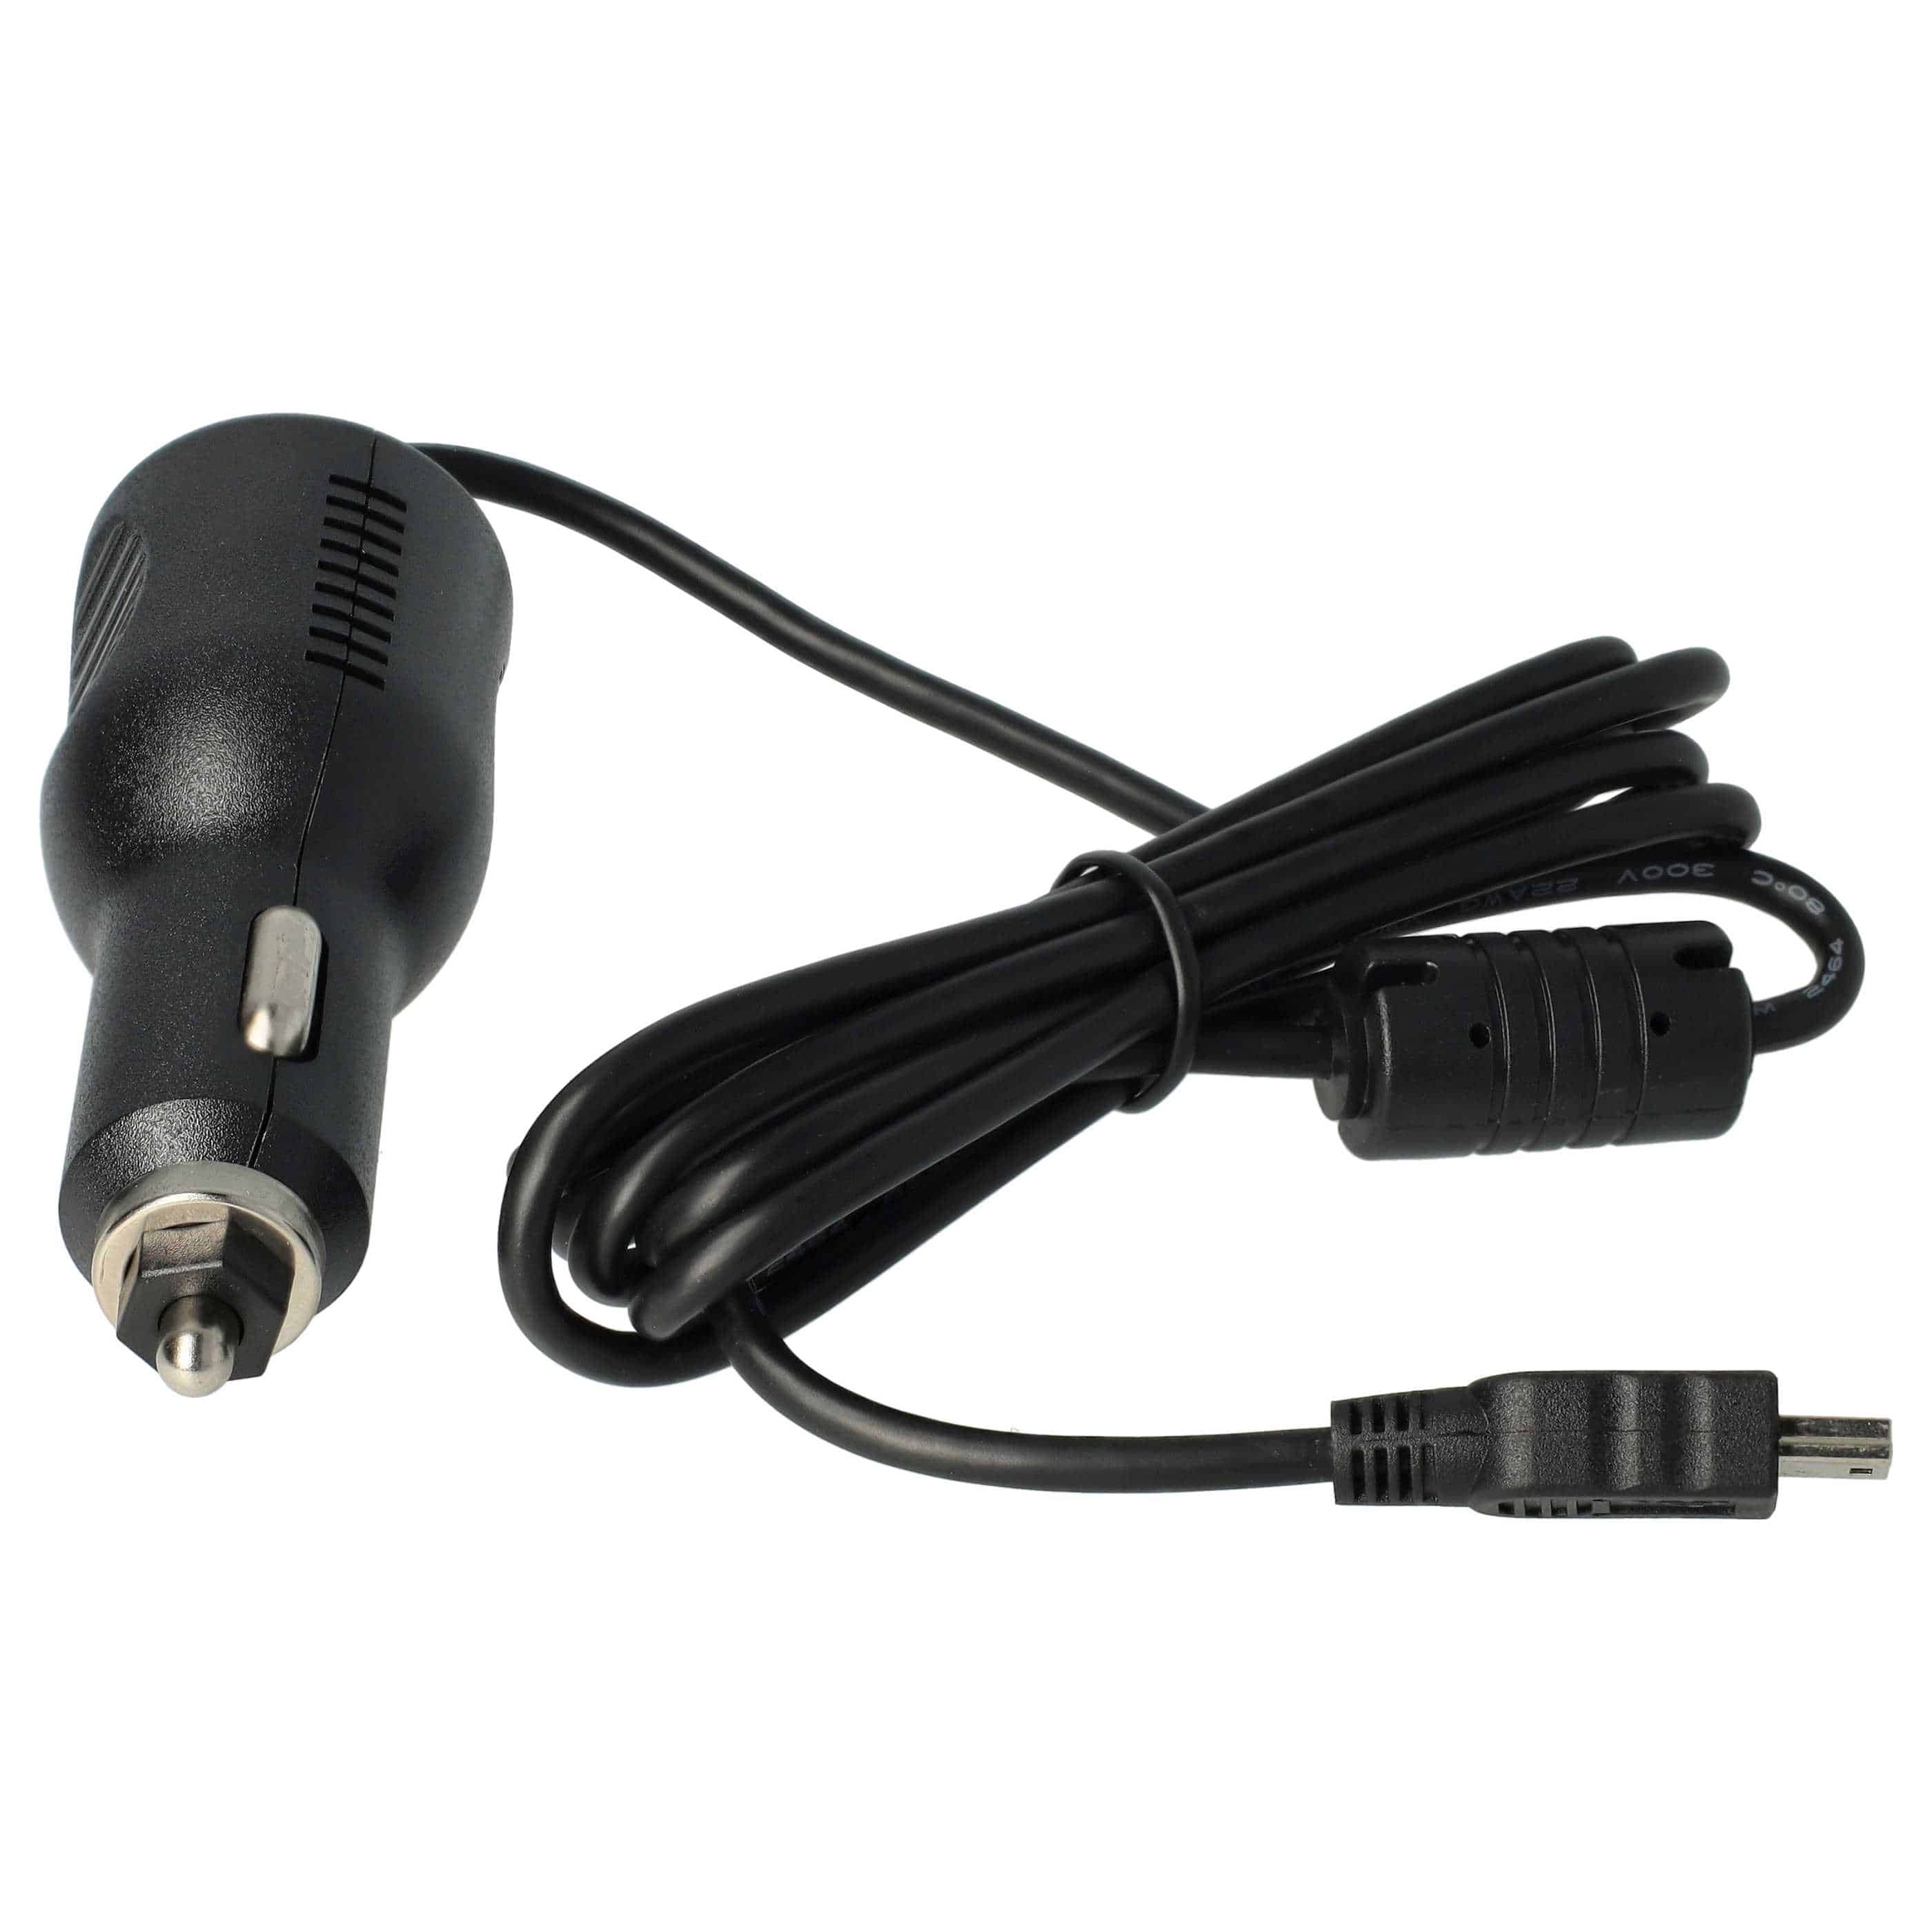 Caricatore per auto mini-USB 2,0 A per dispositivi come GPS, navigatore + antenna TMC integrata